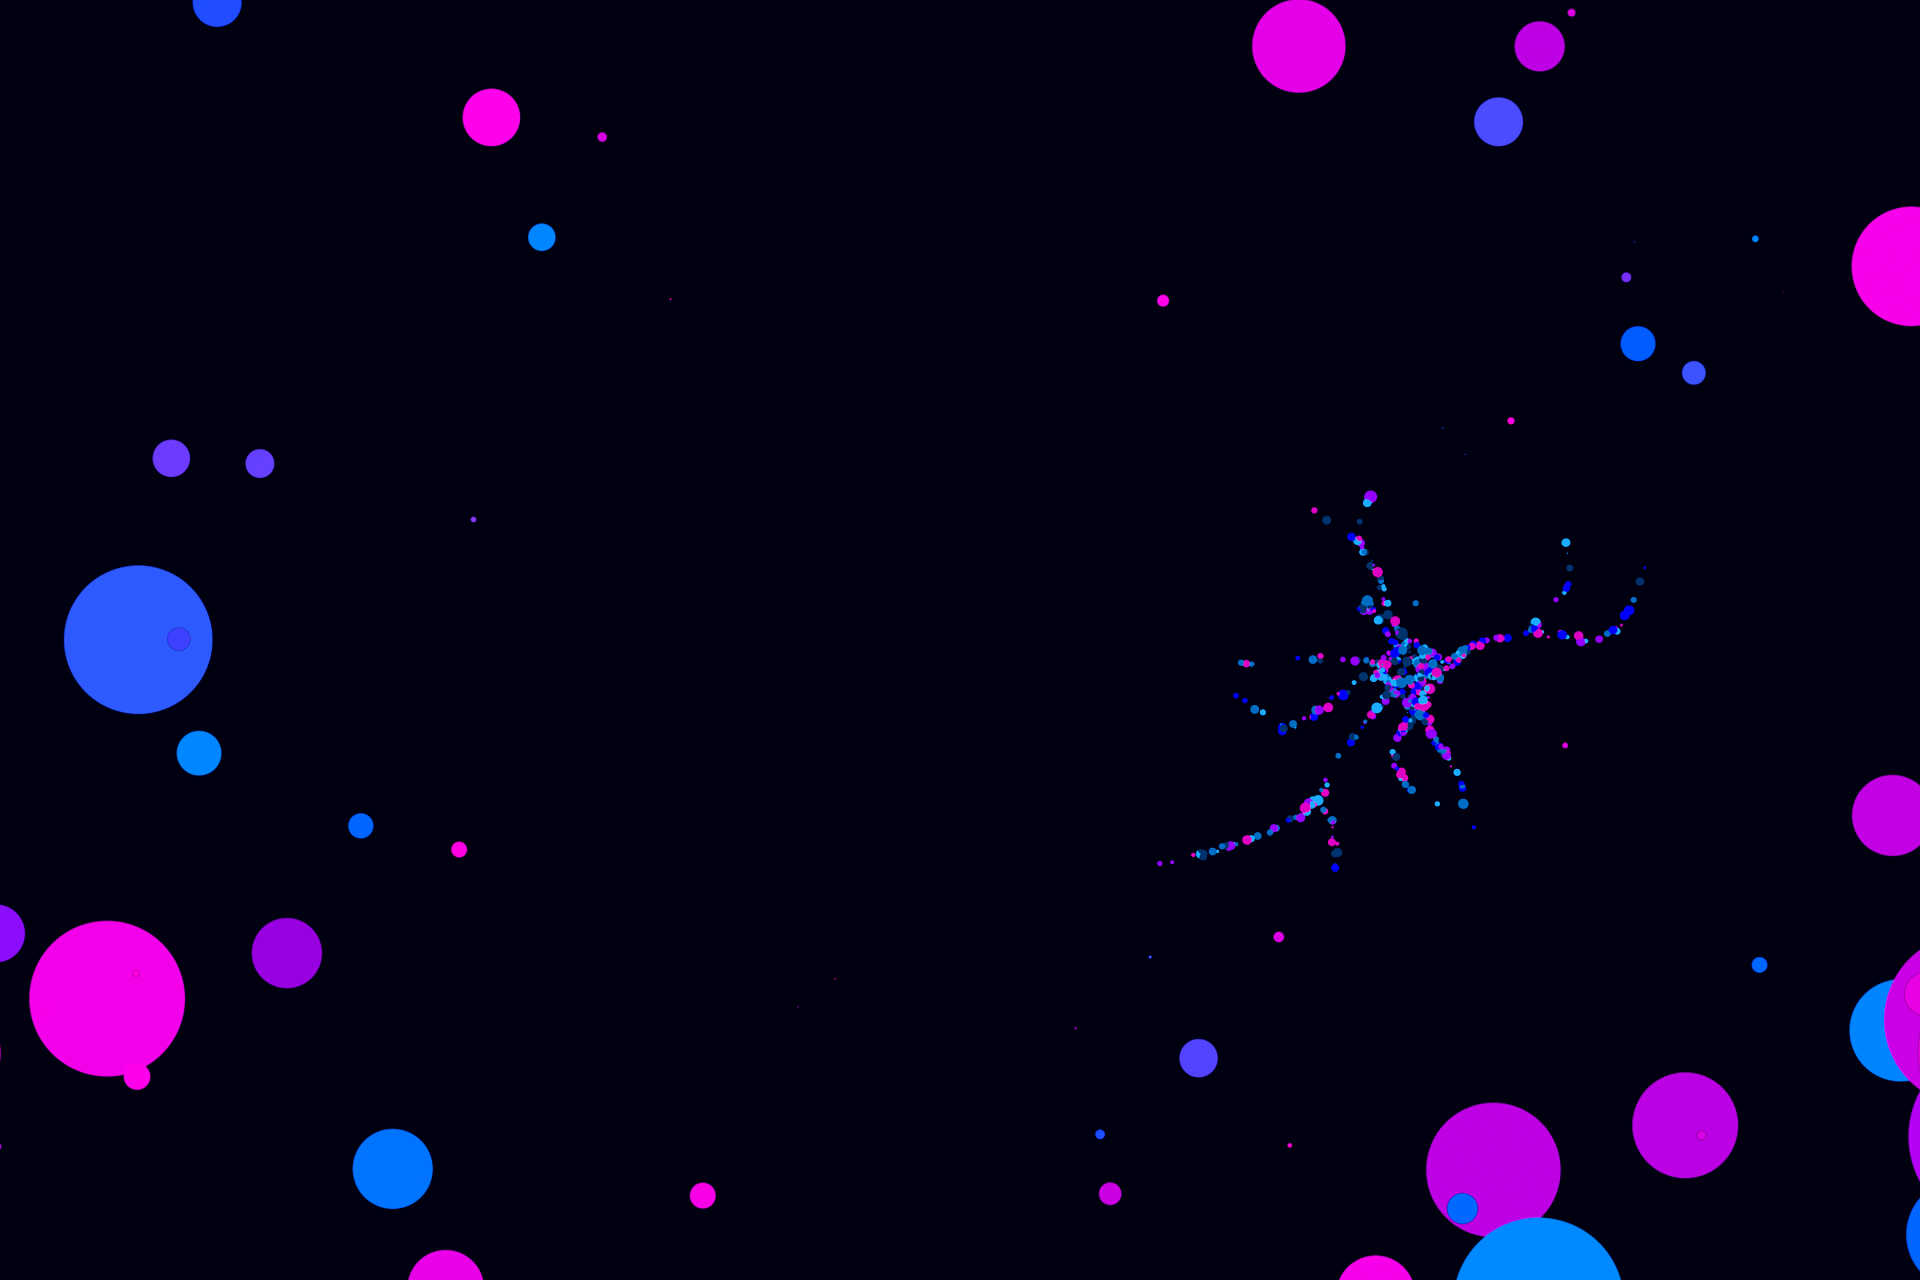 Neuron assembled by dots